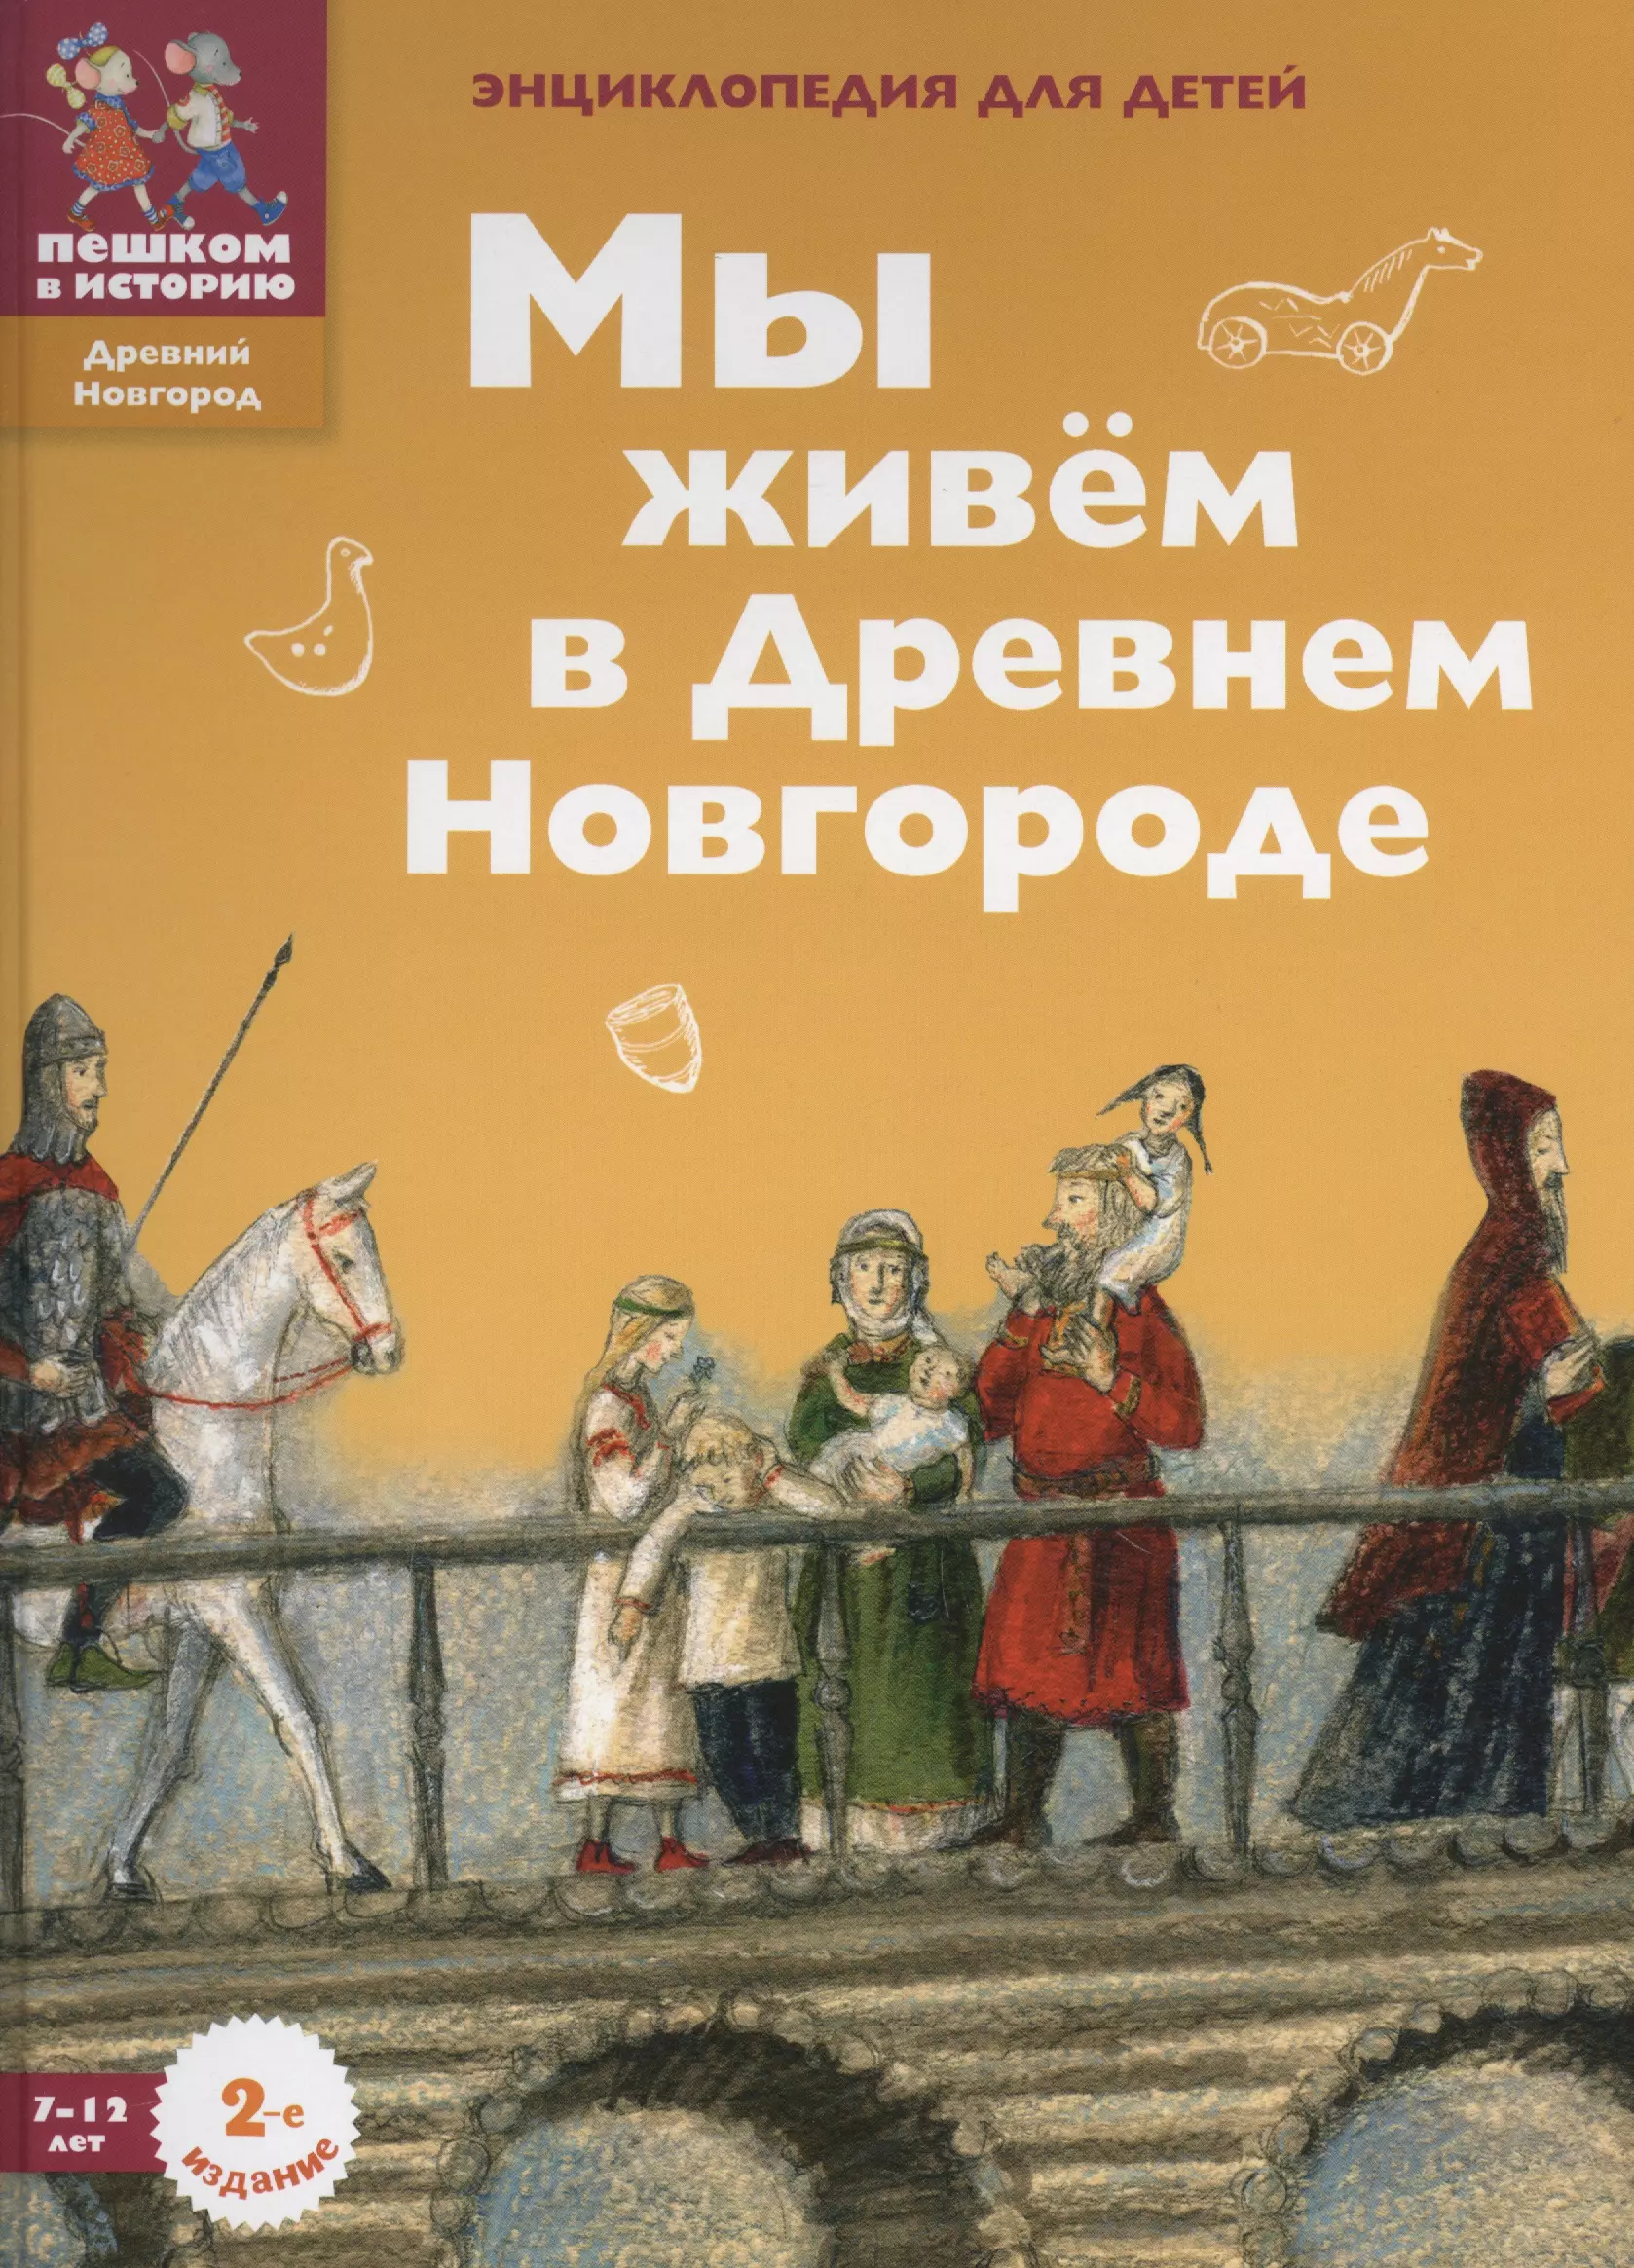 Харман Дильшат - Мы живем в Древнем Новгороде: энциклопедия для детей.